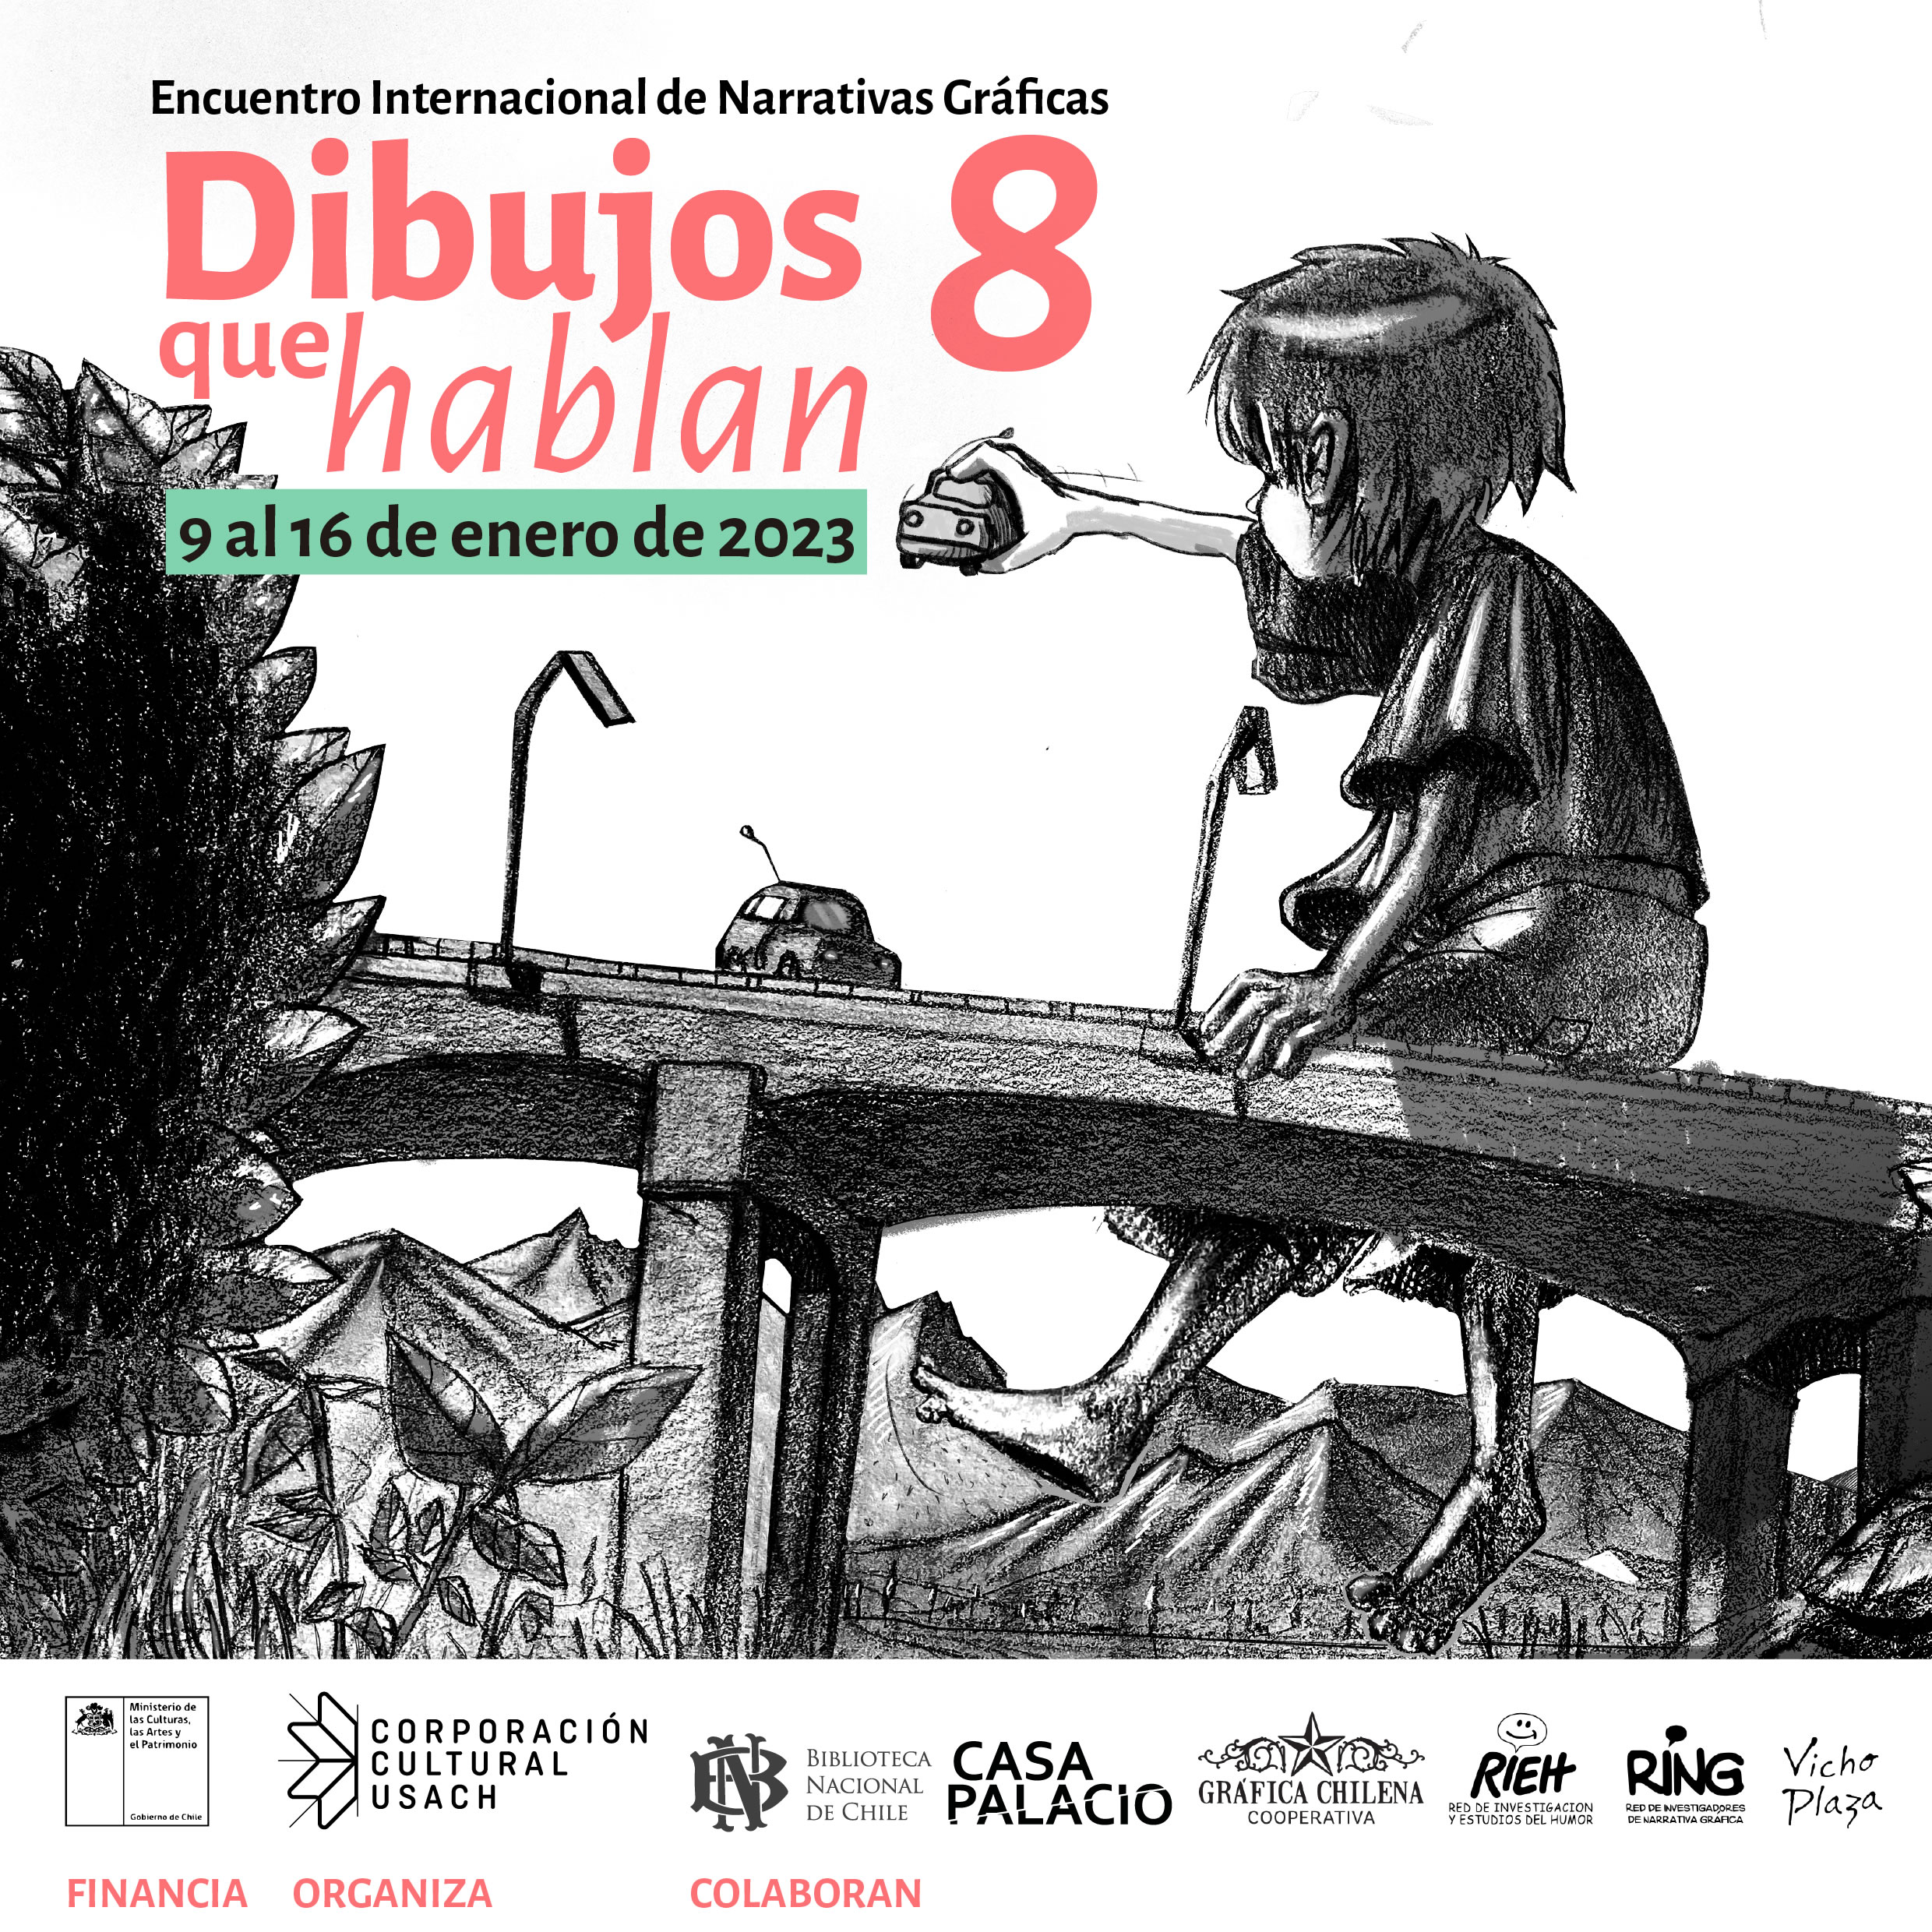 Dibujos que hablan: Invitan al 8vo encuentro internacional de narrativas gráficas en Santiago